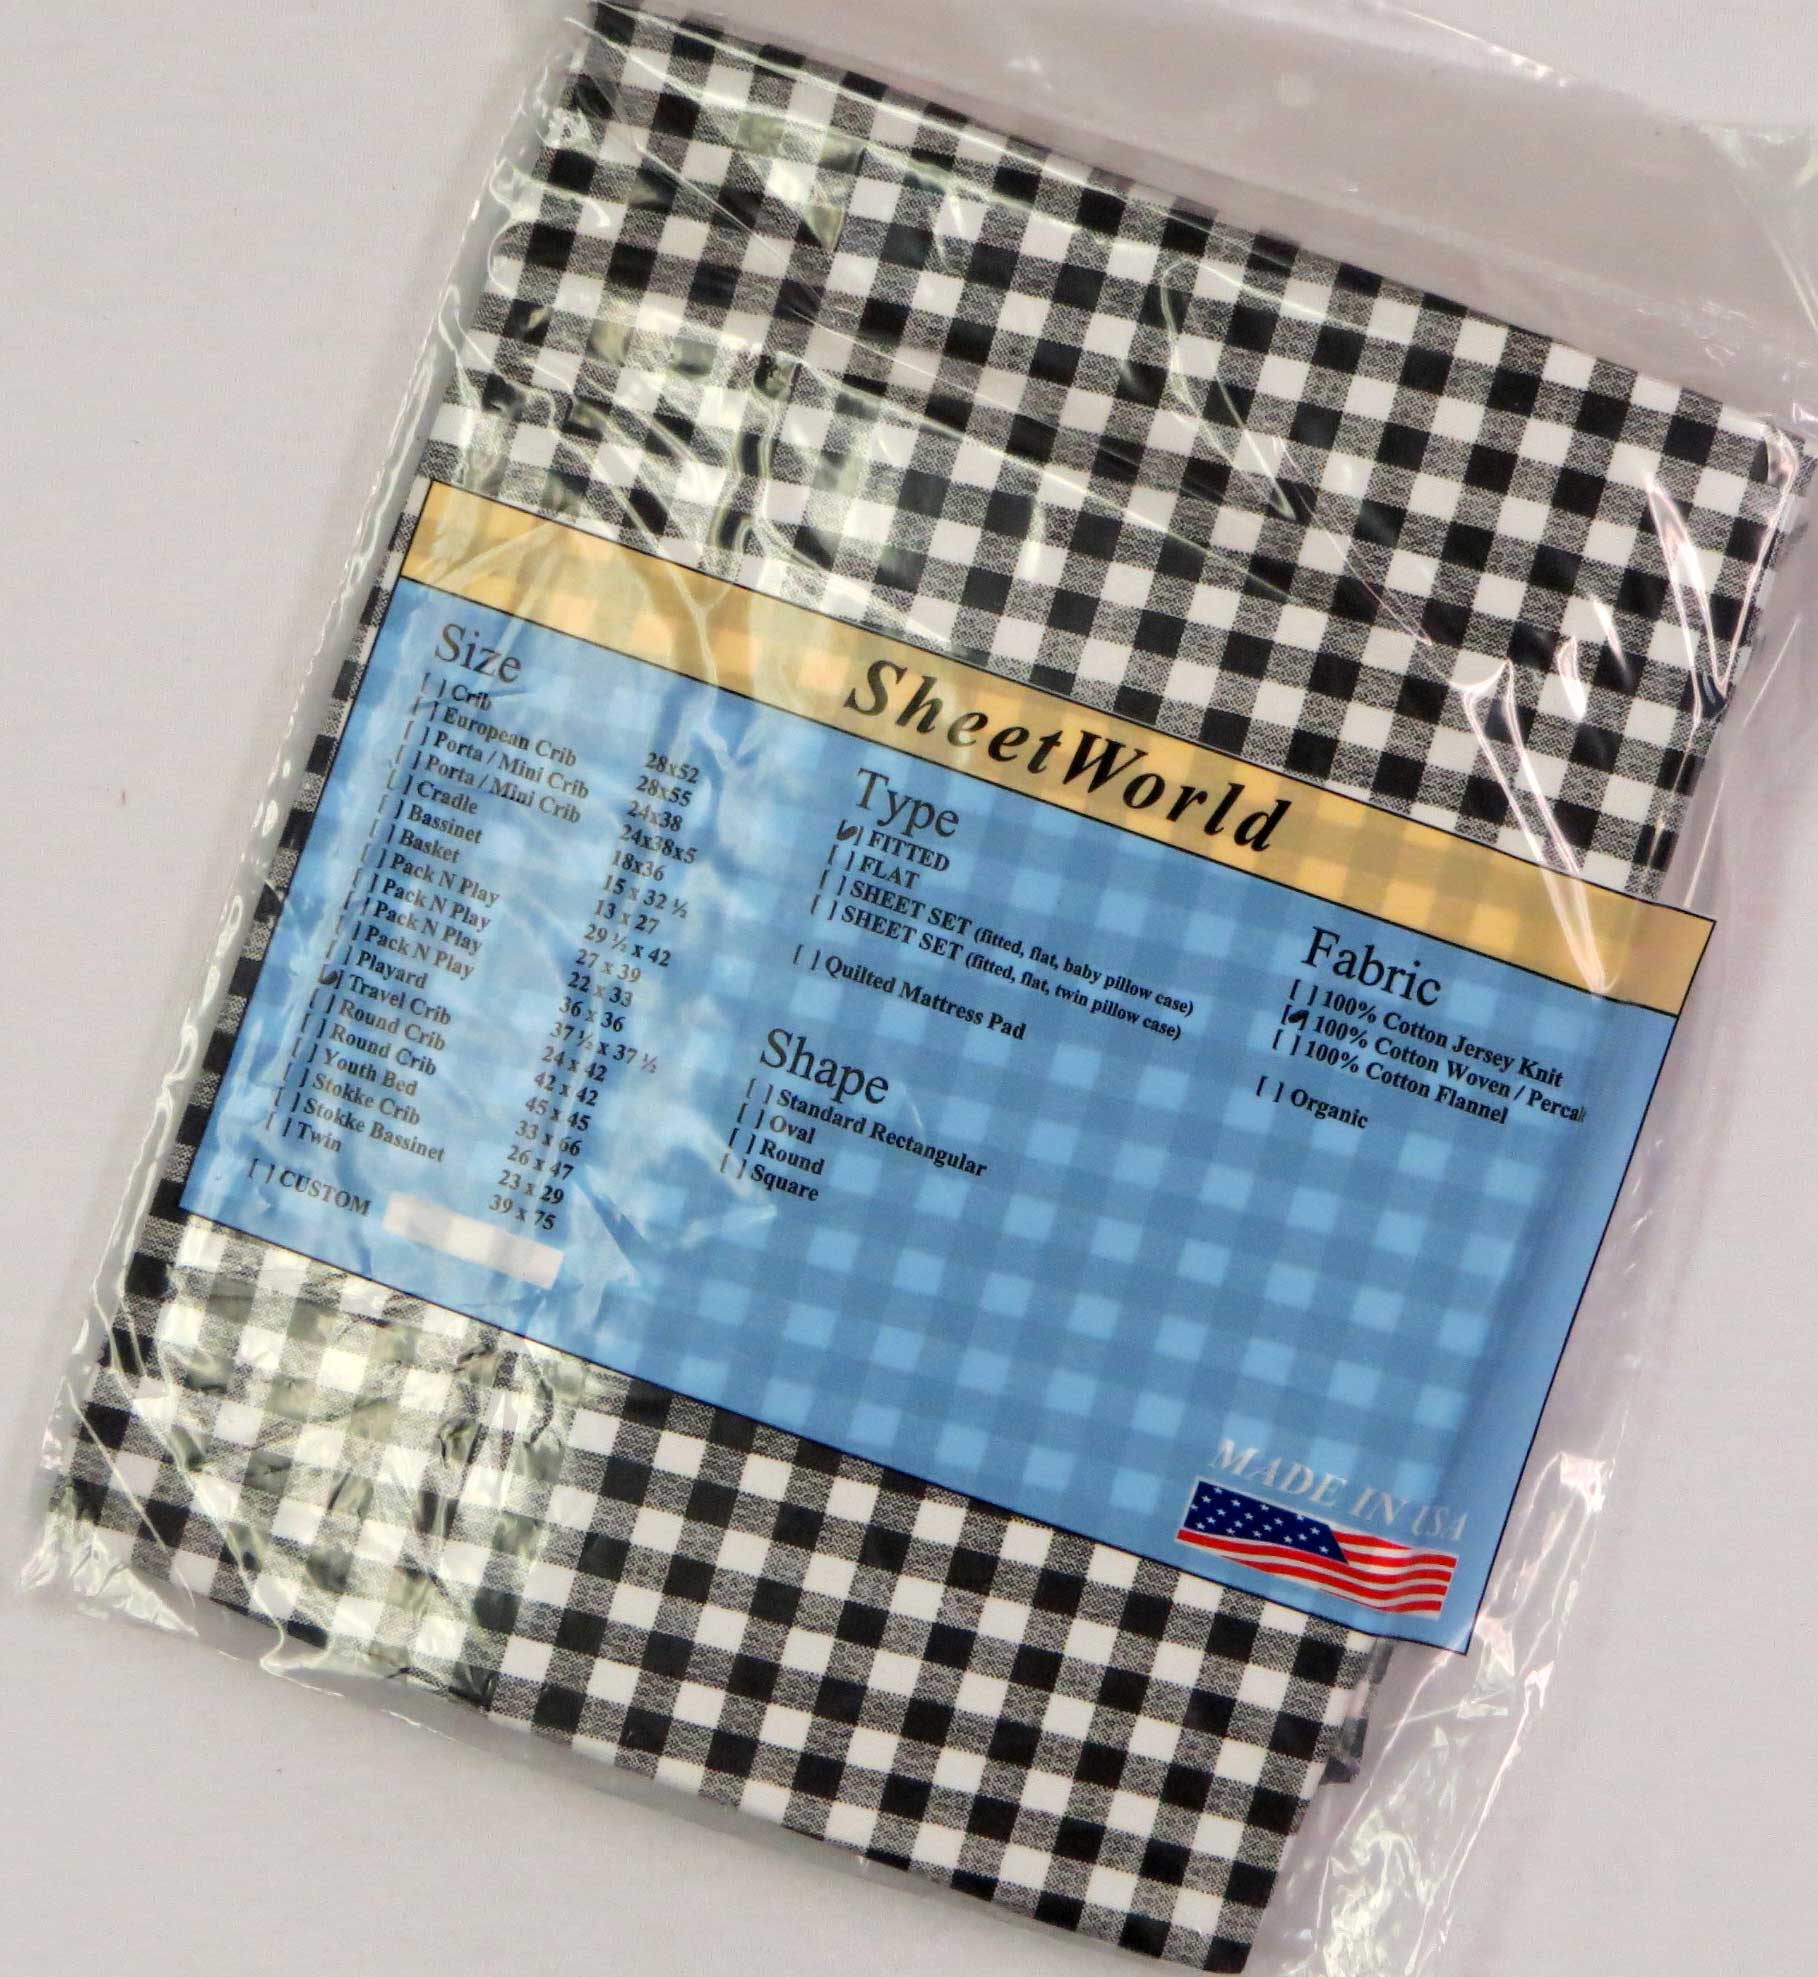 Black White Check Cotton Percale Travel Lite Playard Sheet - Fits BabyBjorn 24 x 42